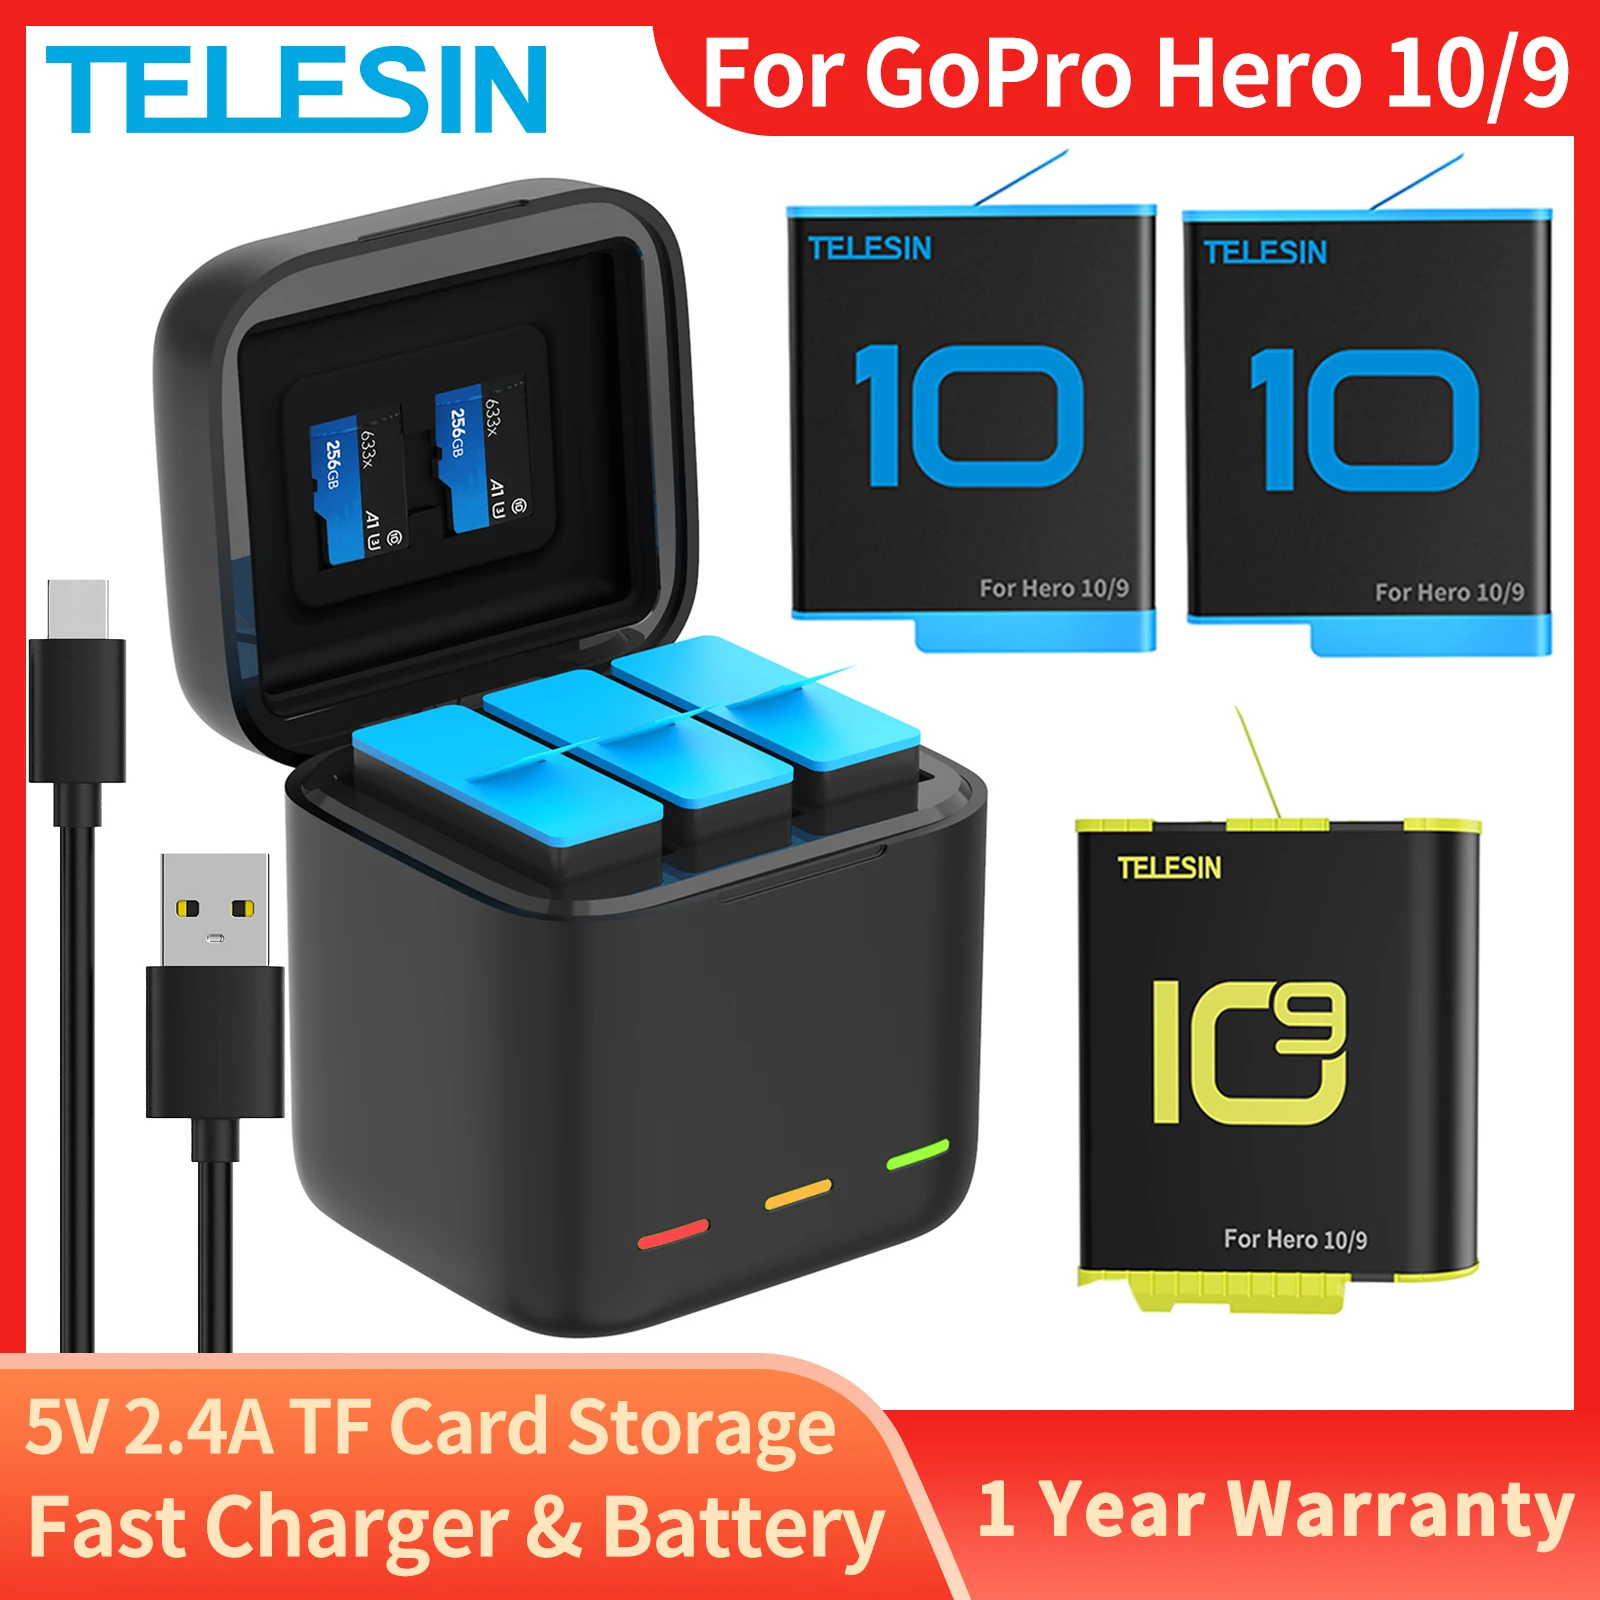 Аккумуляторная батарея TELESIN 1750 мАч для GoPro Hero 10, трехсторонняя светодиодная подсветка, зарядное устройство для быстрой зарядки, карта памяти...